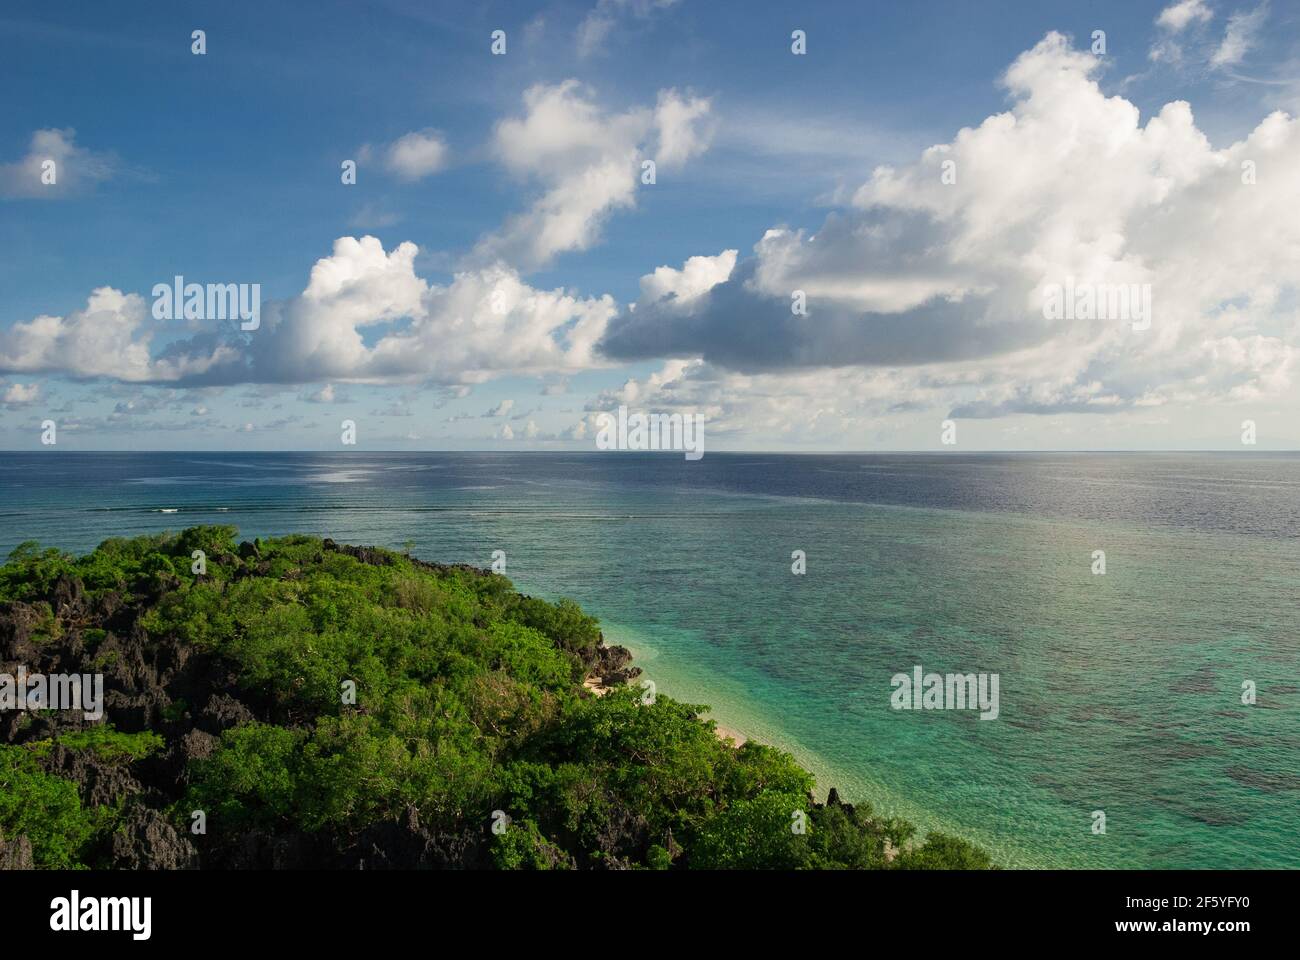 Draufsicht Aufnahme eines Mangrovenwaldes mit einer Lagune irgendwo mitten im Meer. Die herrliche Aussicht ist unter blauem bewölktem Himmel in der Mitte von t Stockfoto